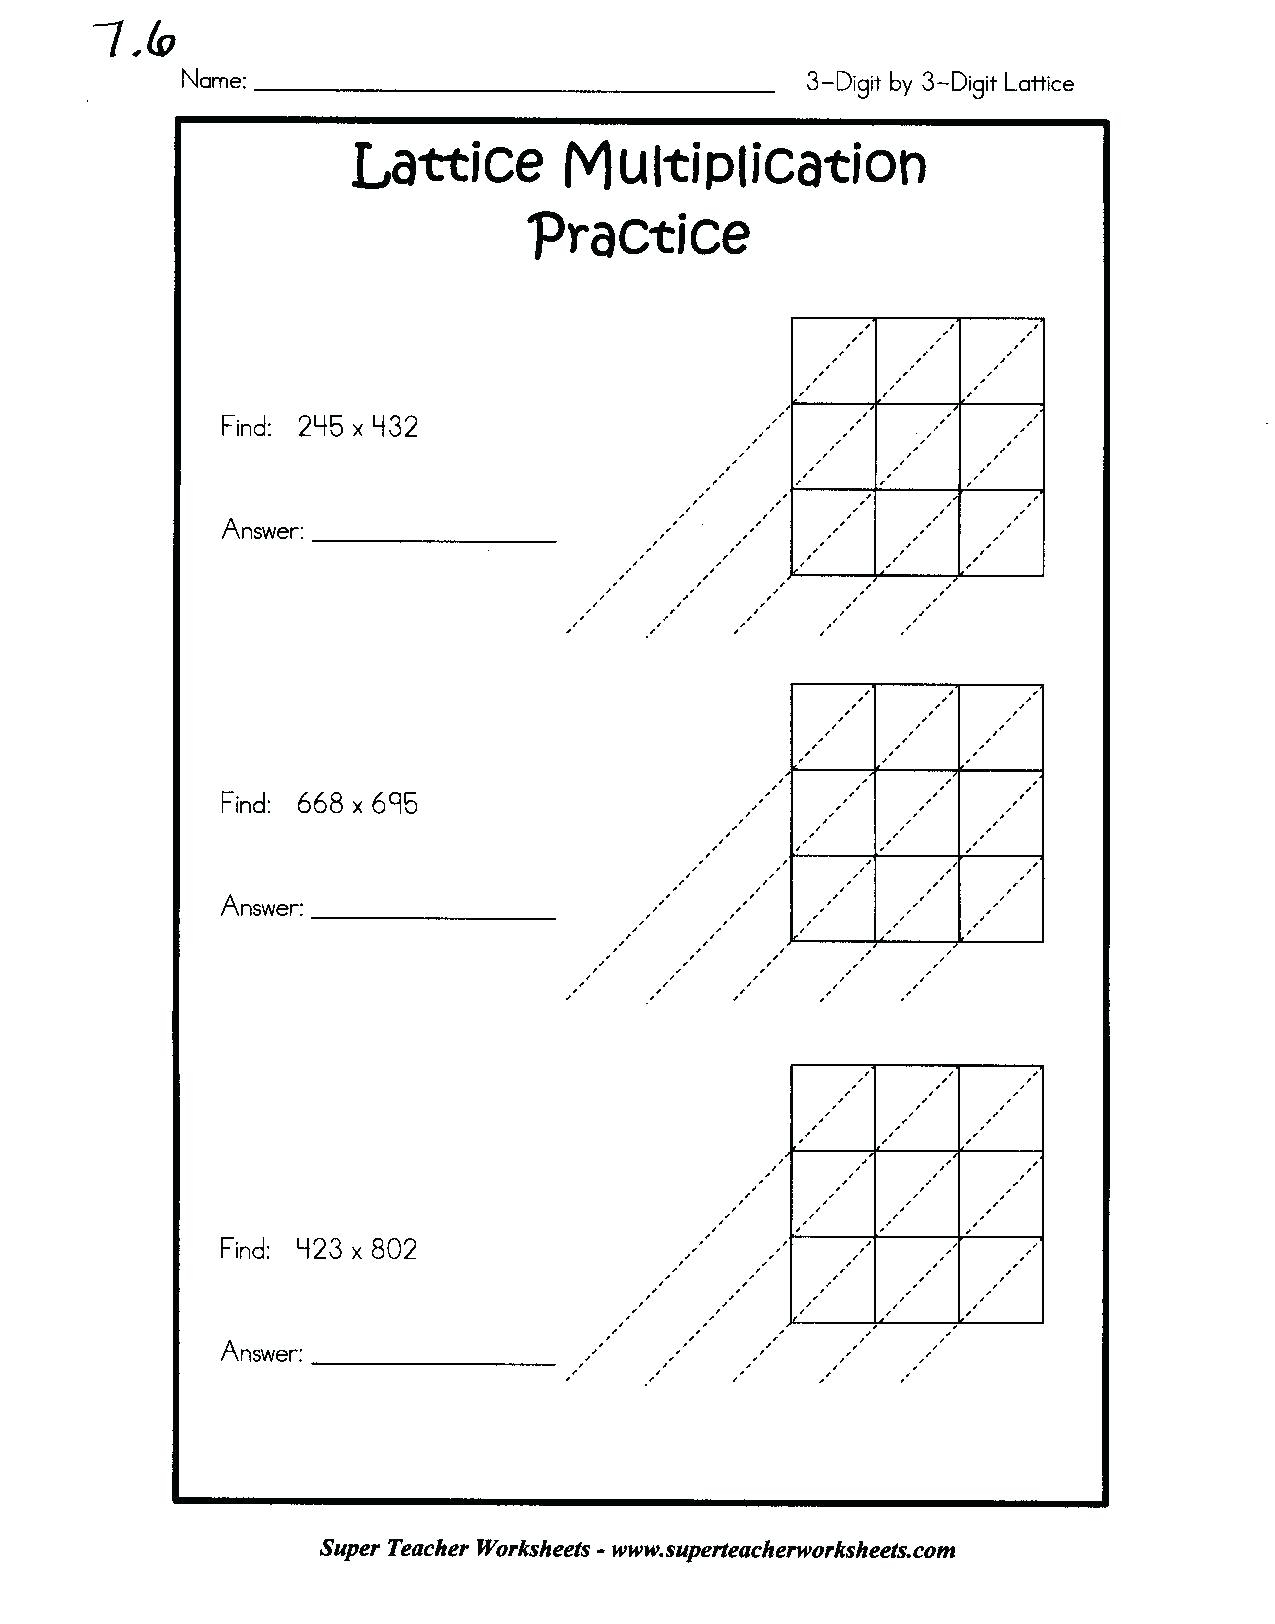 Printable Lattice Multiplication Worksheet 4Th Grade inside Printable Lattice Multiplication Worksheets